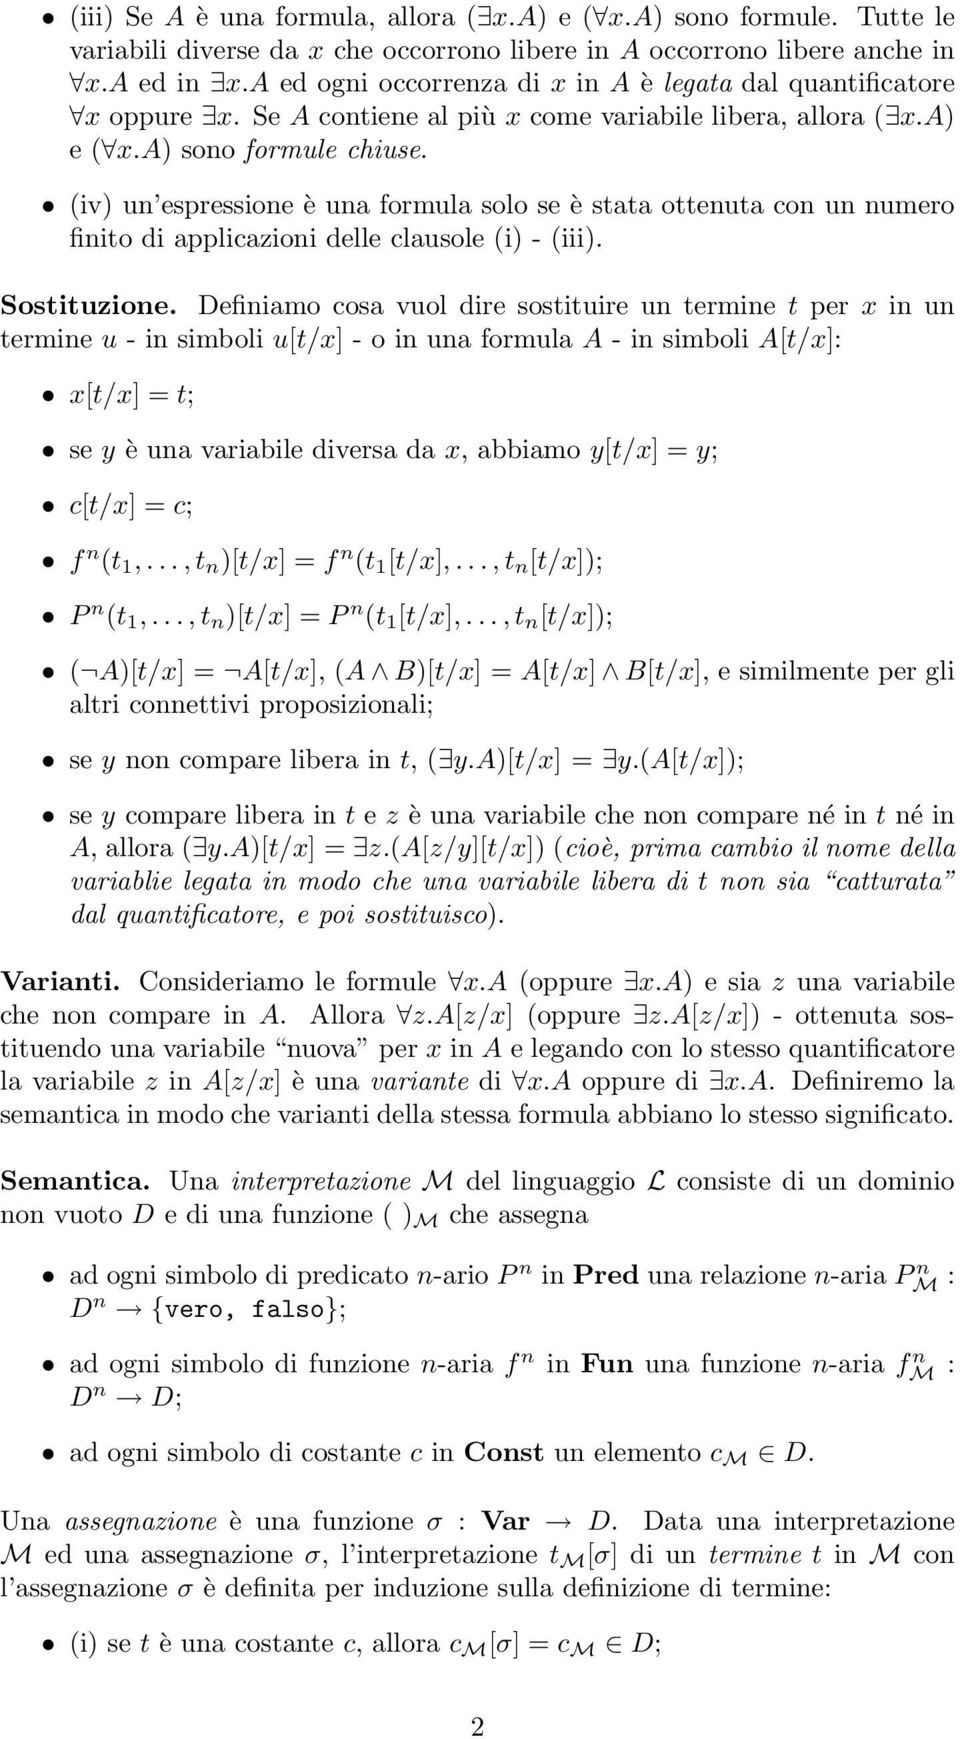 (iv) un espressione è una formula solo se è stata ottenuta con un numero finito di applicazioni delle clausole (i) - (iii). Sostituzione.